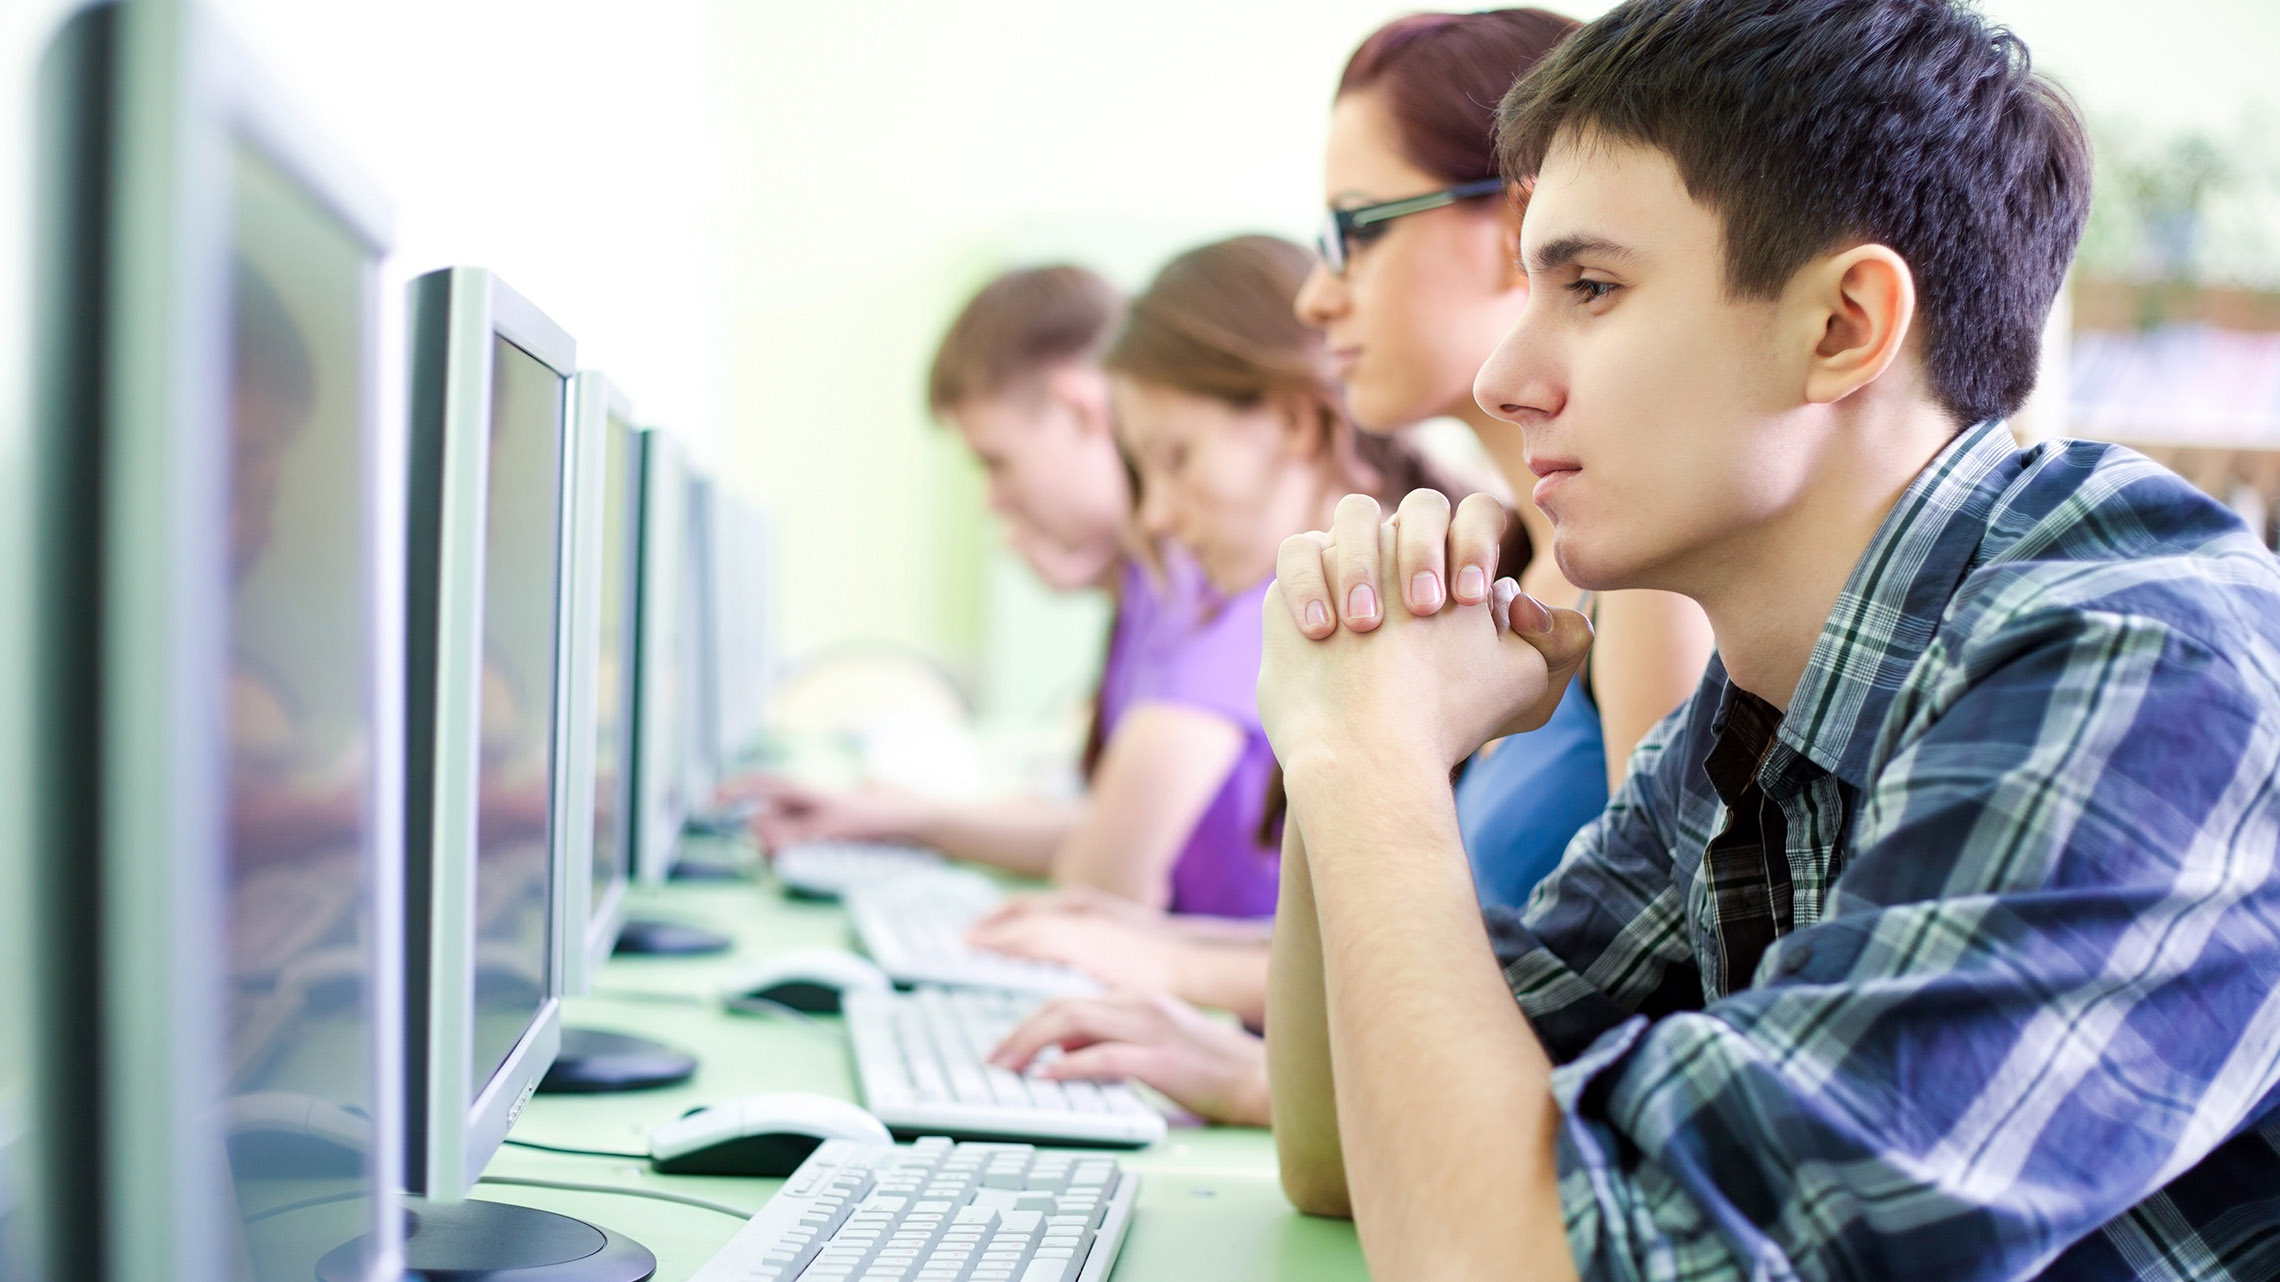 Компьютер урок 1. Подросток за компьютером. Подросток и компьютер. Ученик за компьютером. Школьники за компьютеро.